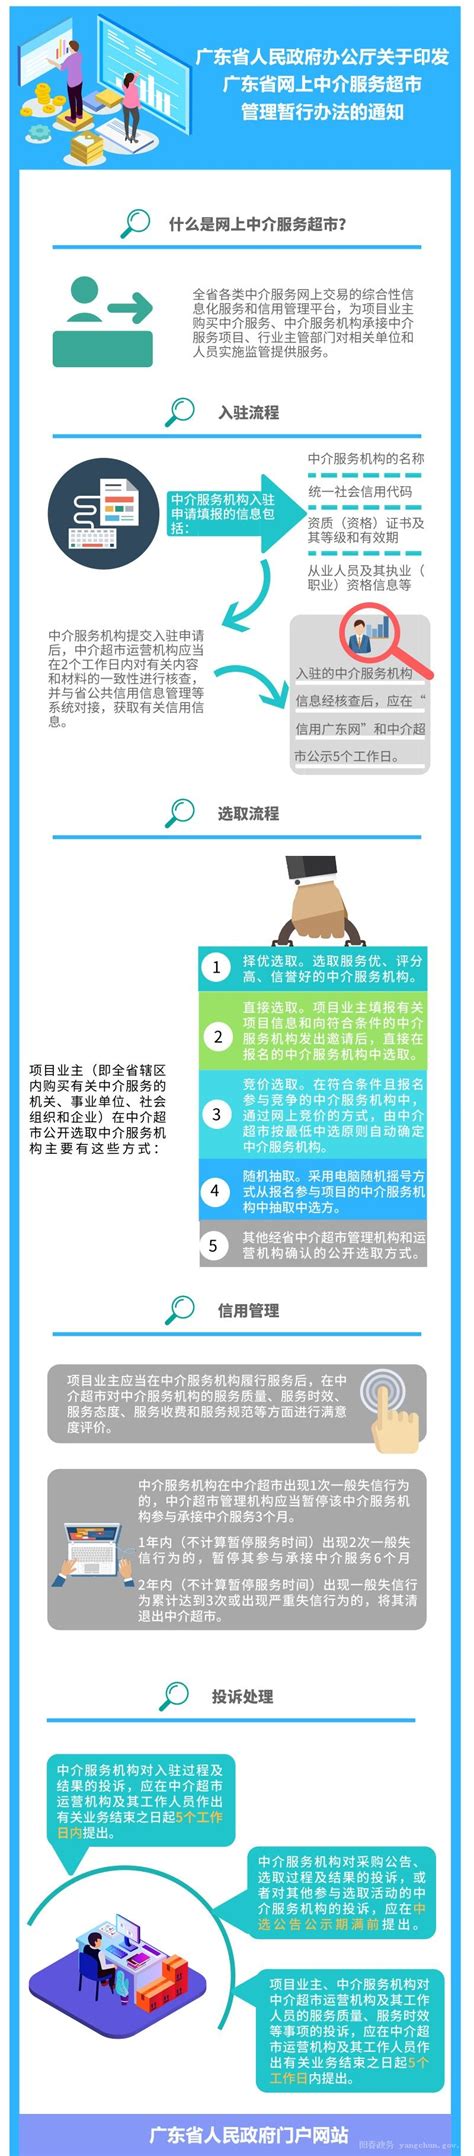 一图读懂广东省网上中介服务超市管理暂行办法